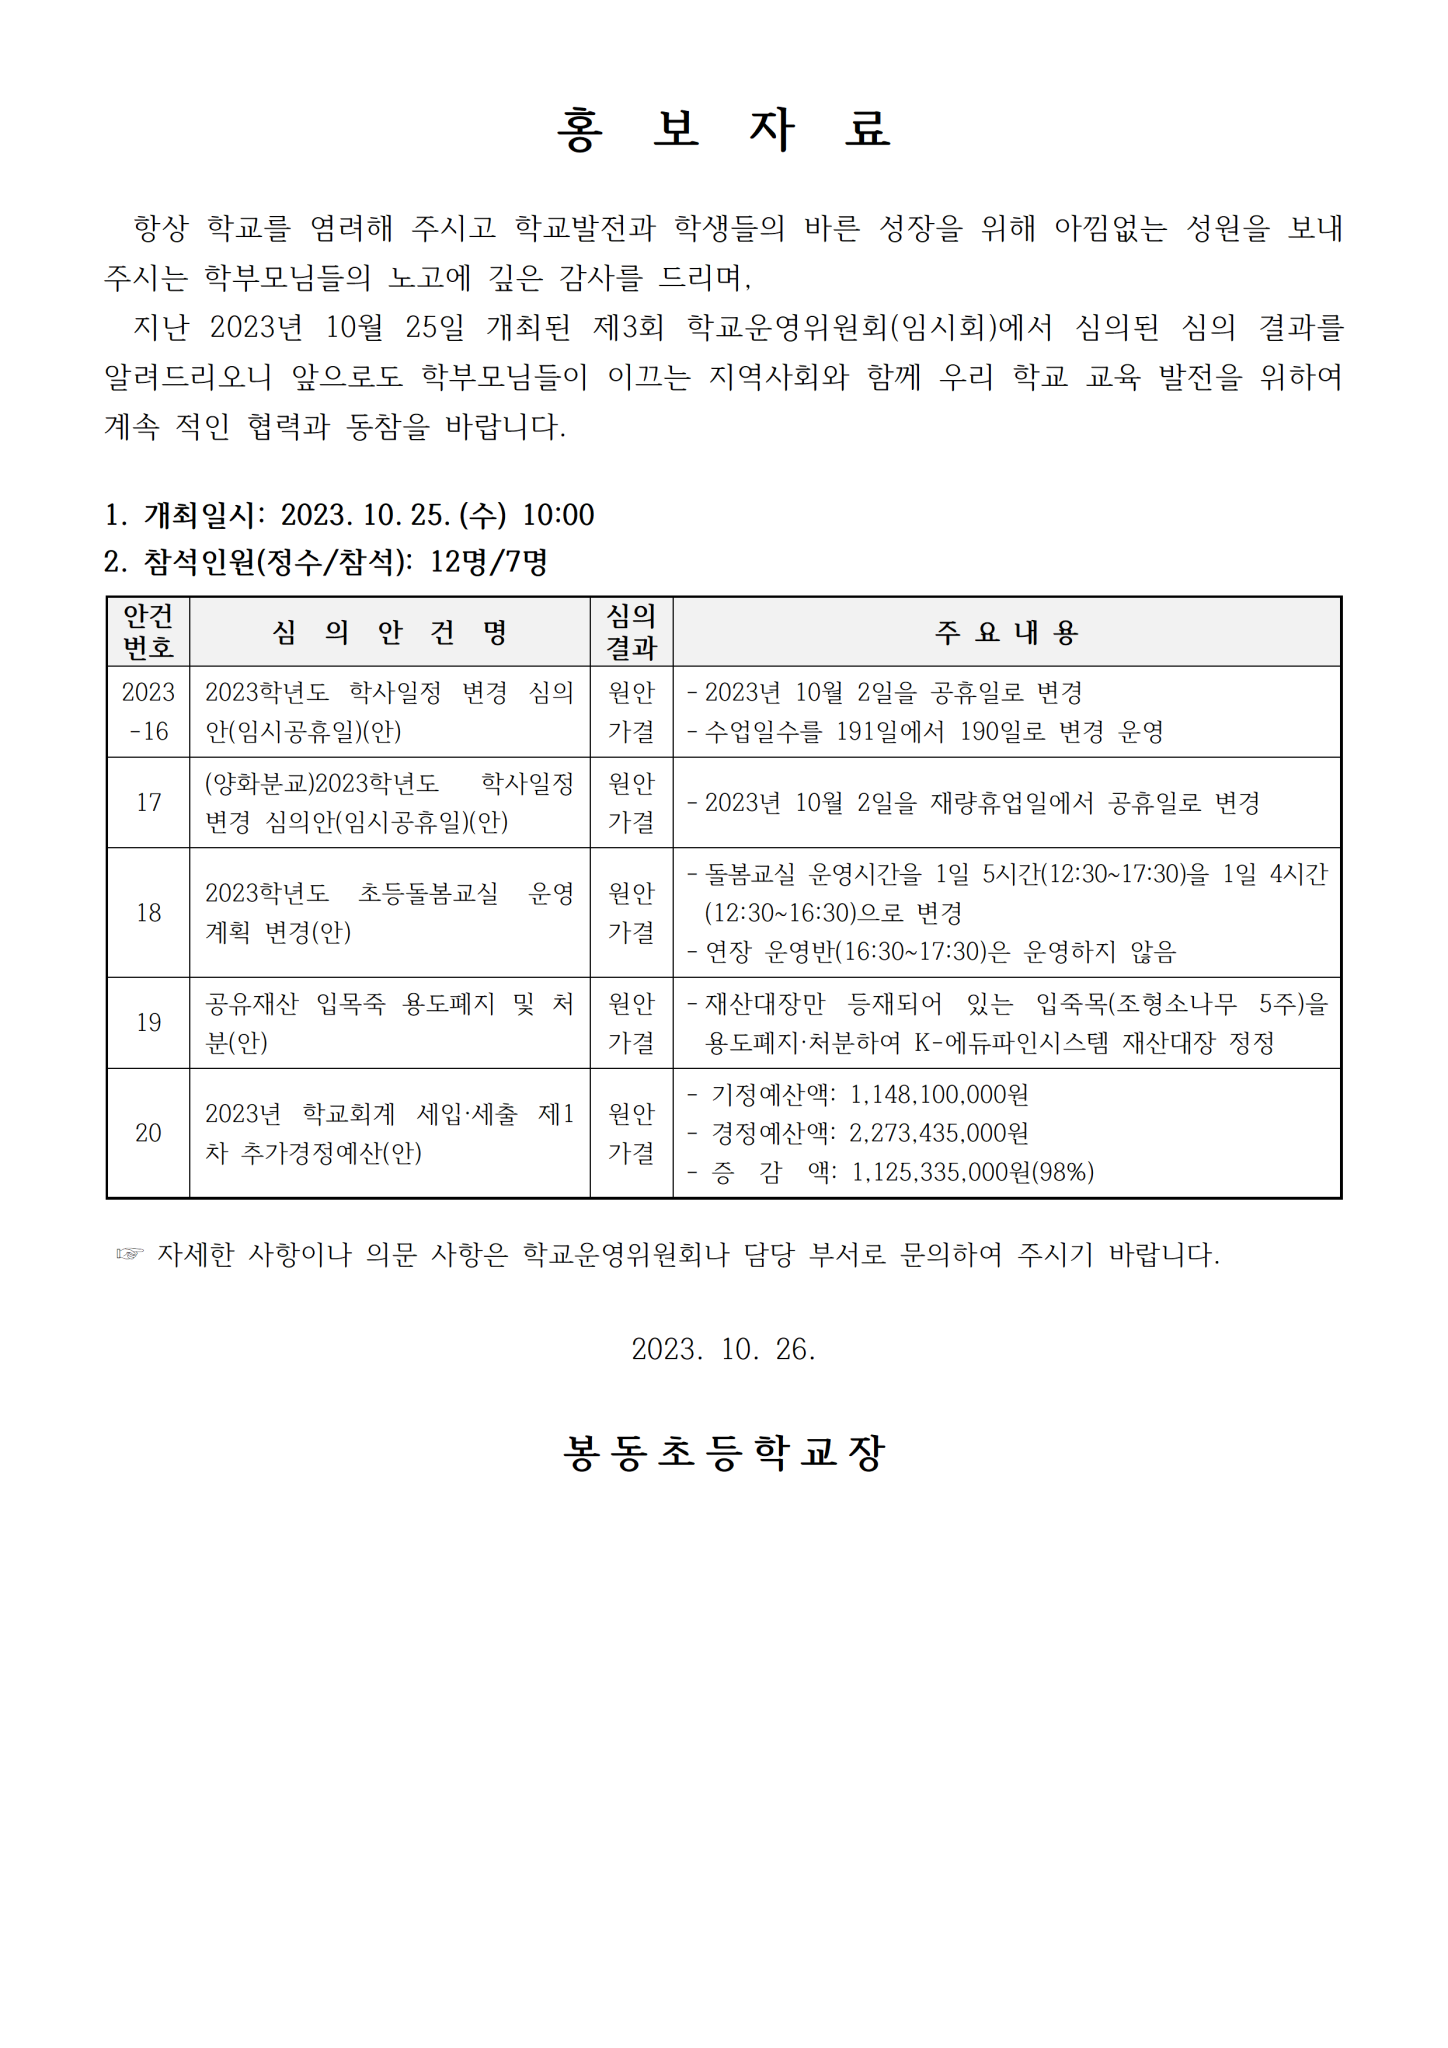 4-1. 회의결과 홍보자료001